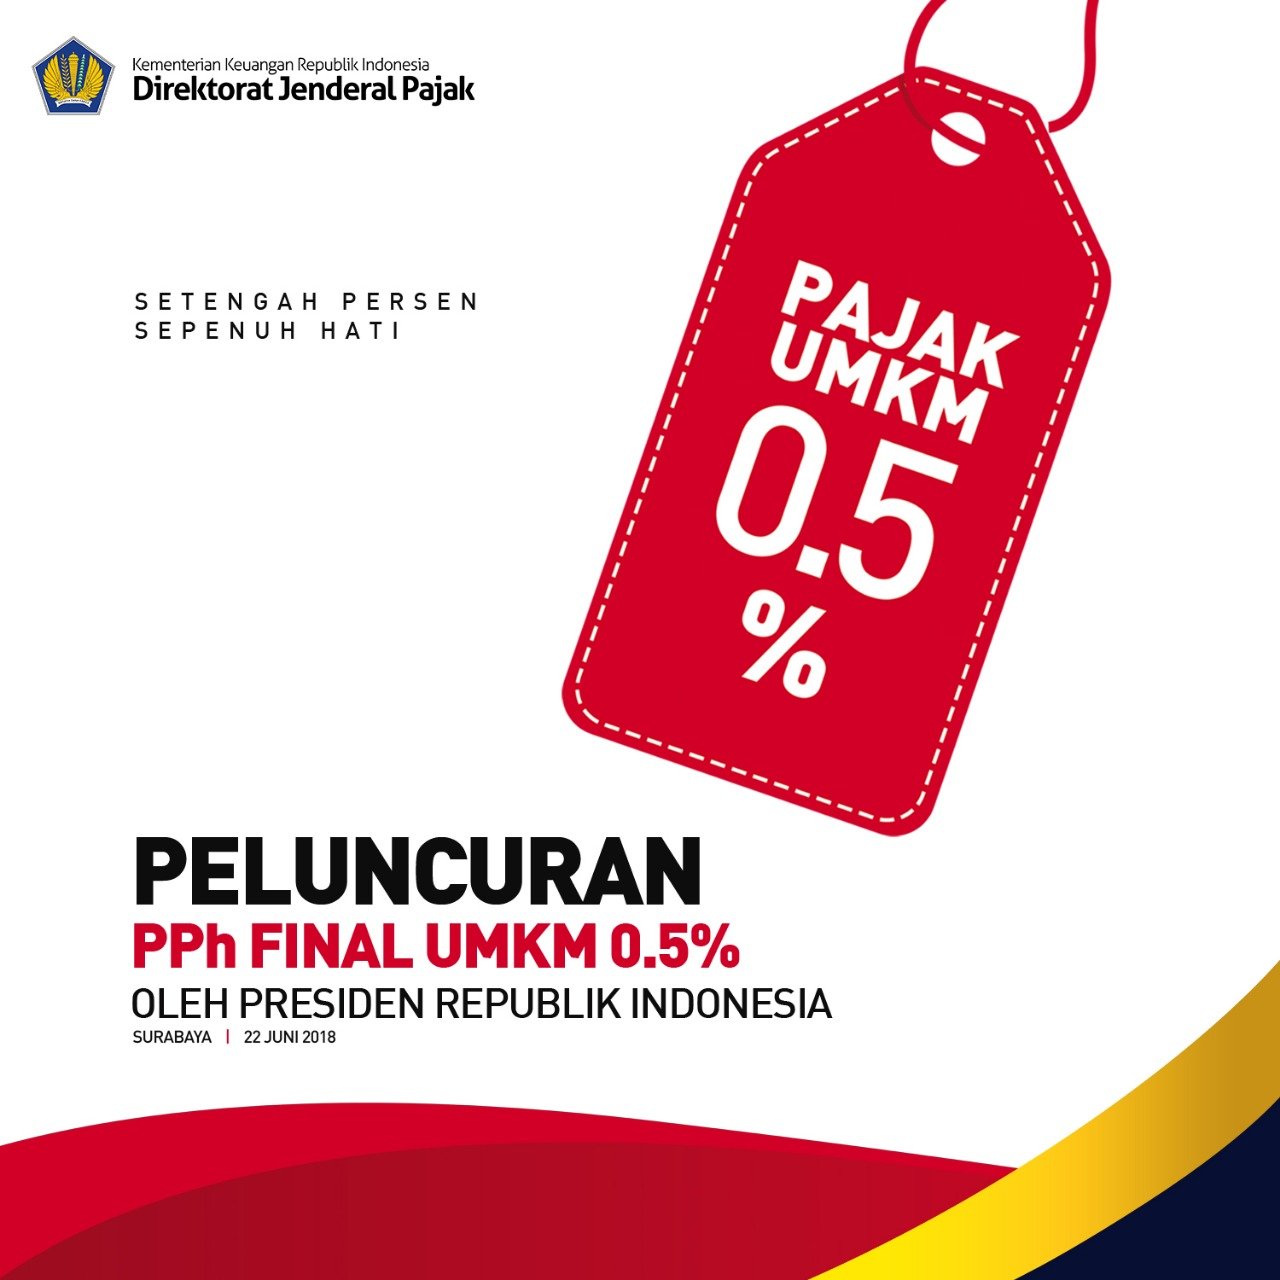 Read more about the article Tarif UMKM Terbaru Tahun 2018 Berdasarkan PP 23 / 2018 Serta Surat Keterangan Bebas yang Baru